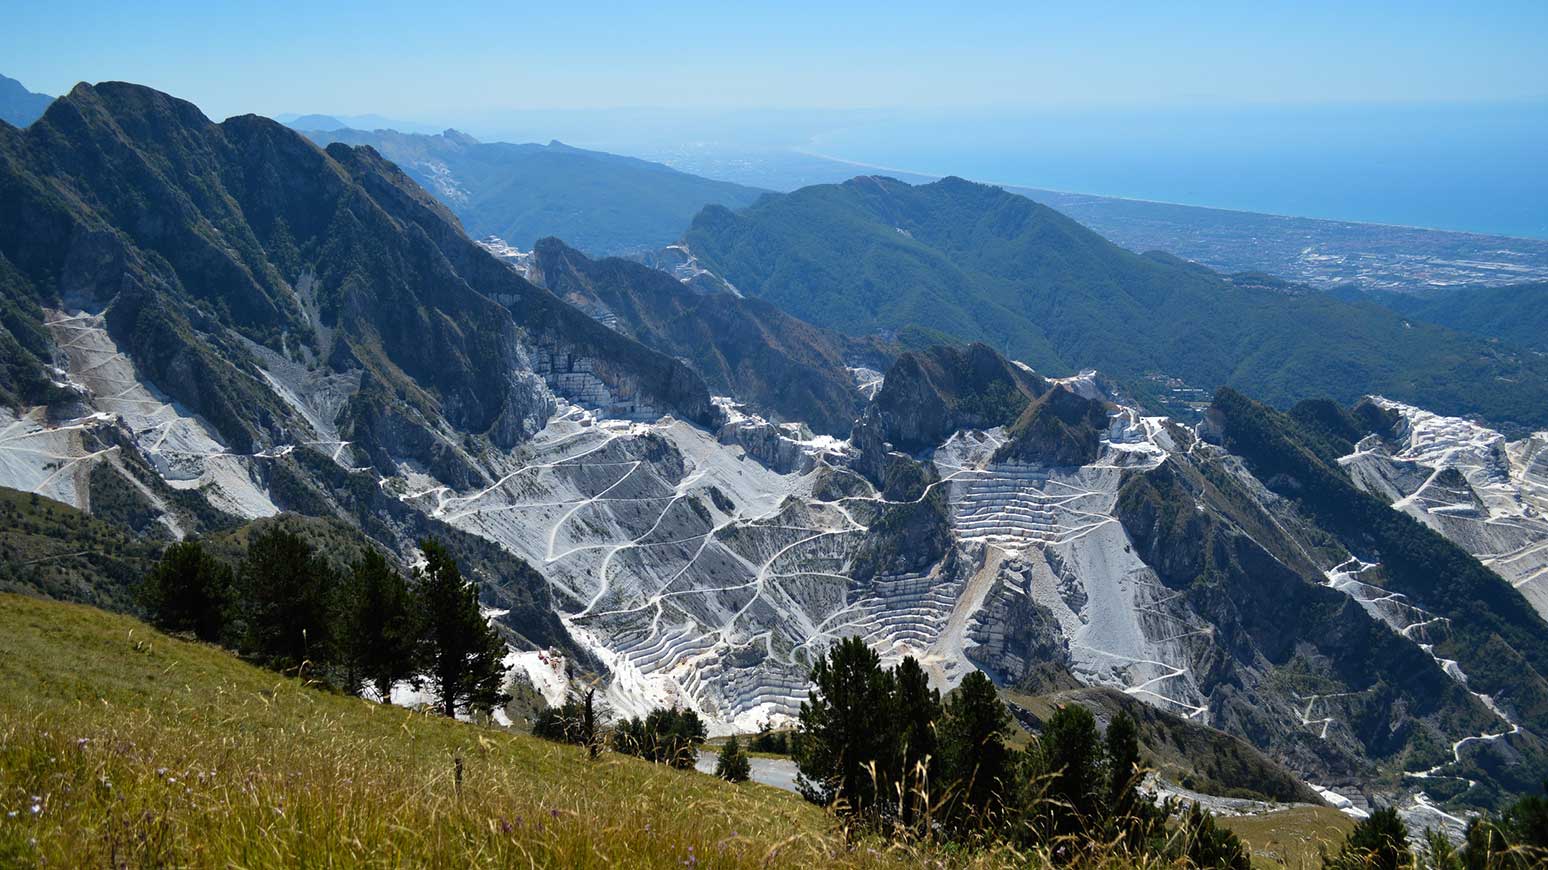 Radreise Toskana: Diesen Traumblick werden Sie erleben. Blick auf die Marmorbrüche von Carrara und die Ligurische Küste. Ganz links am Meer liegt unser Hotel Versilia Palace